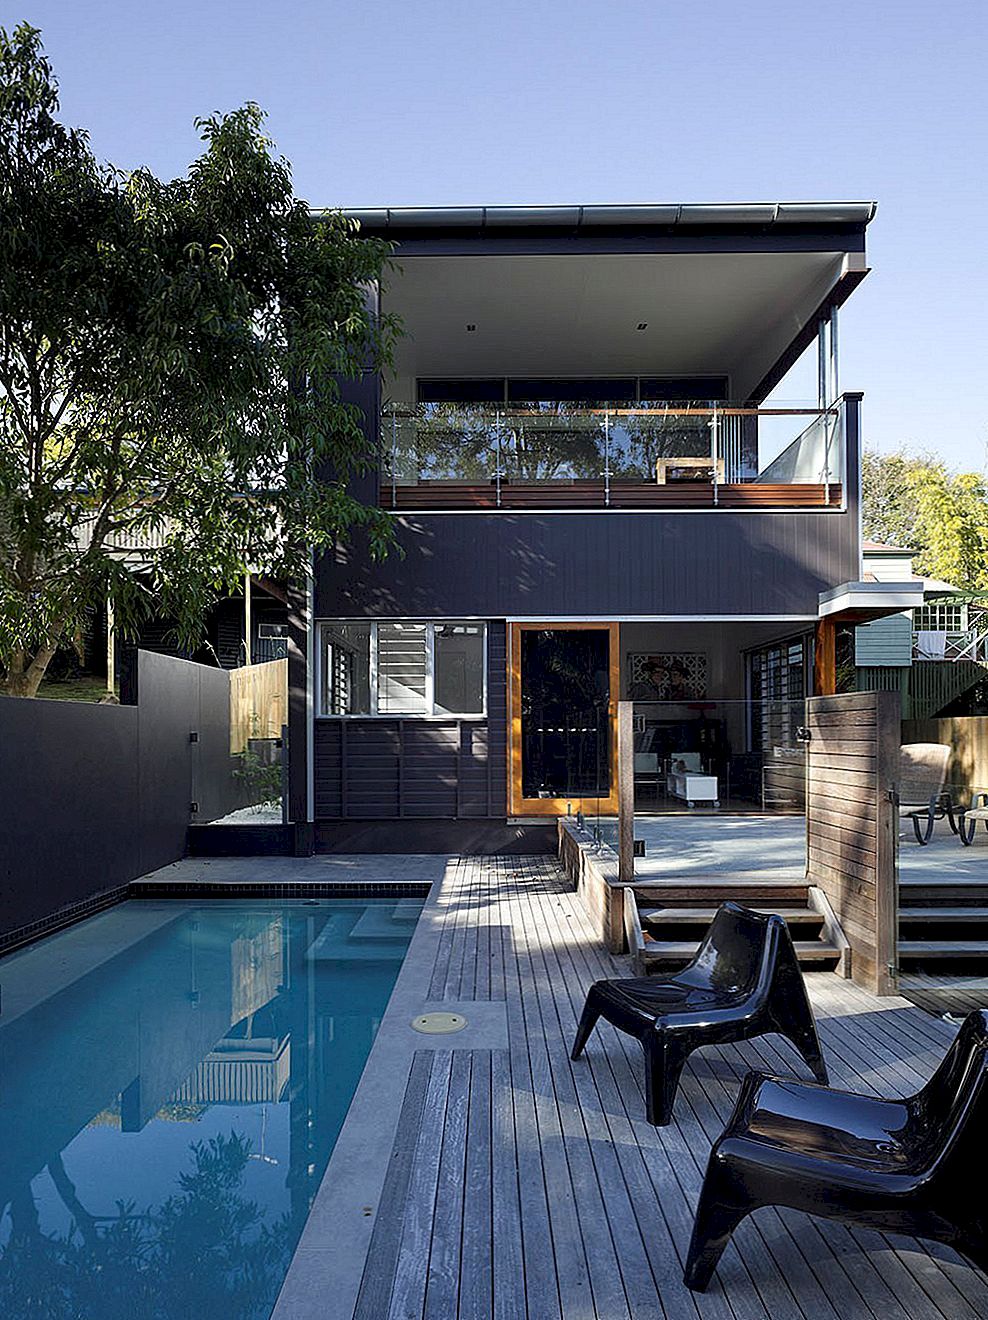 Nápadný australský design domů leskl dokonalosti